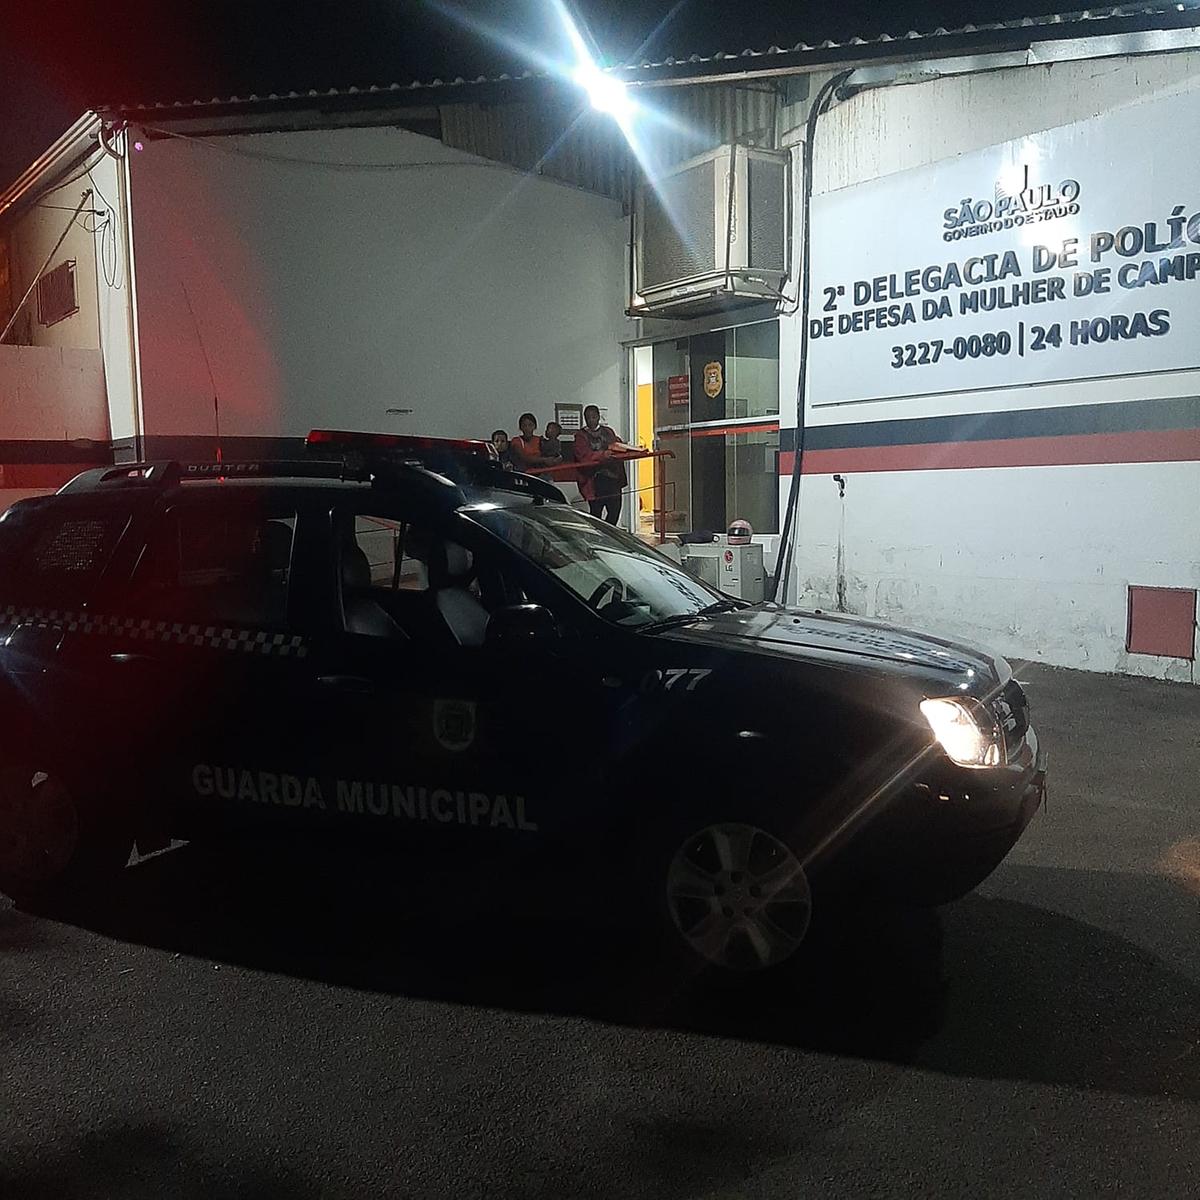 Uma pessoa que testemunhou toda a movimentação deles acionou a Guarda Municipal (Divulgação/Guarda Municipal)